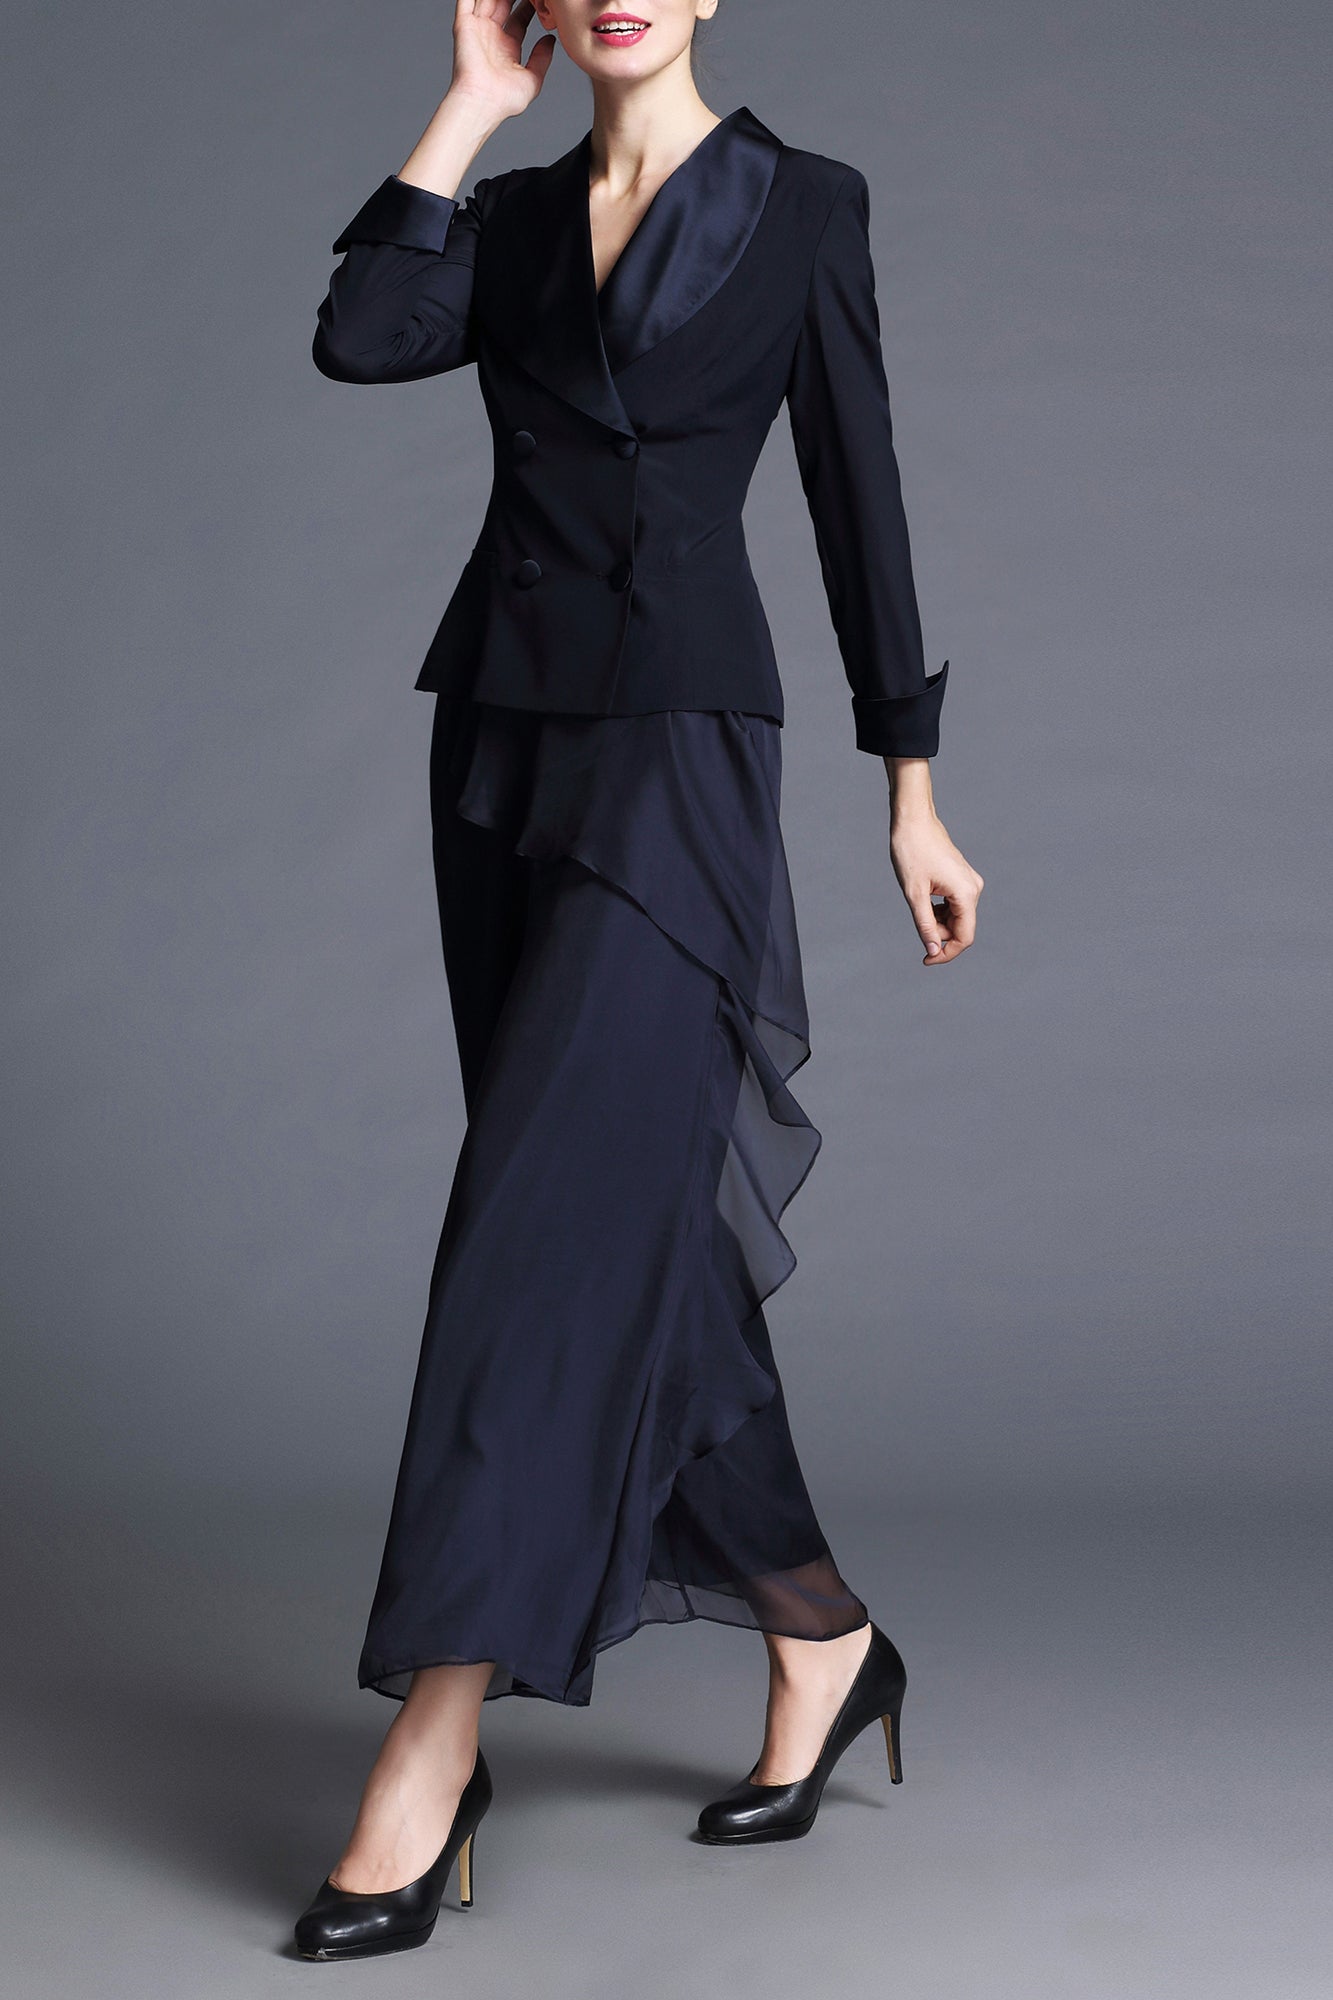 DL Timeless Class & Modern Executive Vivian Summer Suits - Best Selling